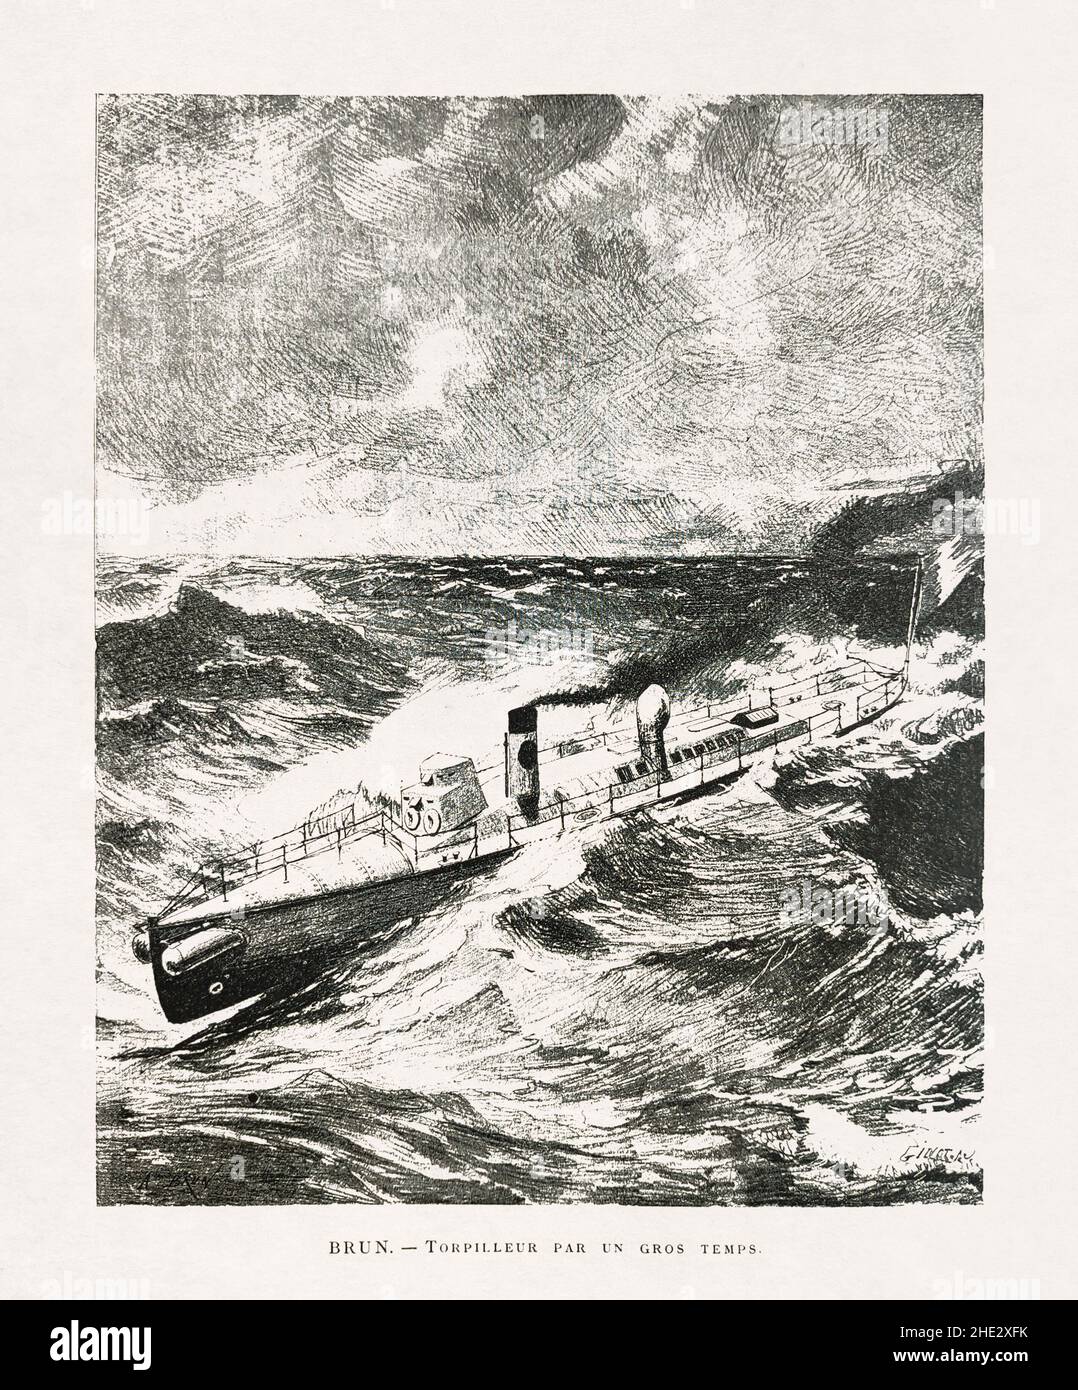 Ilustración titulada 'Torpedo barco en tiempo pesado' de Brun y grabado por Gillot publicado a finales del siglo 19th en la revista mensual 'Paris Ill Foto de stock